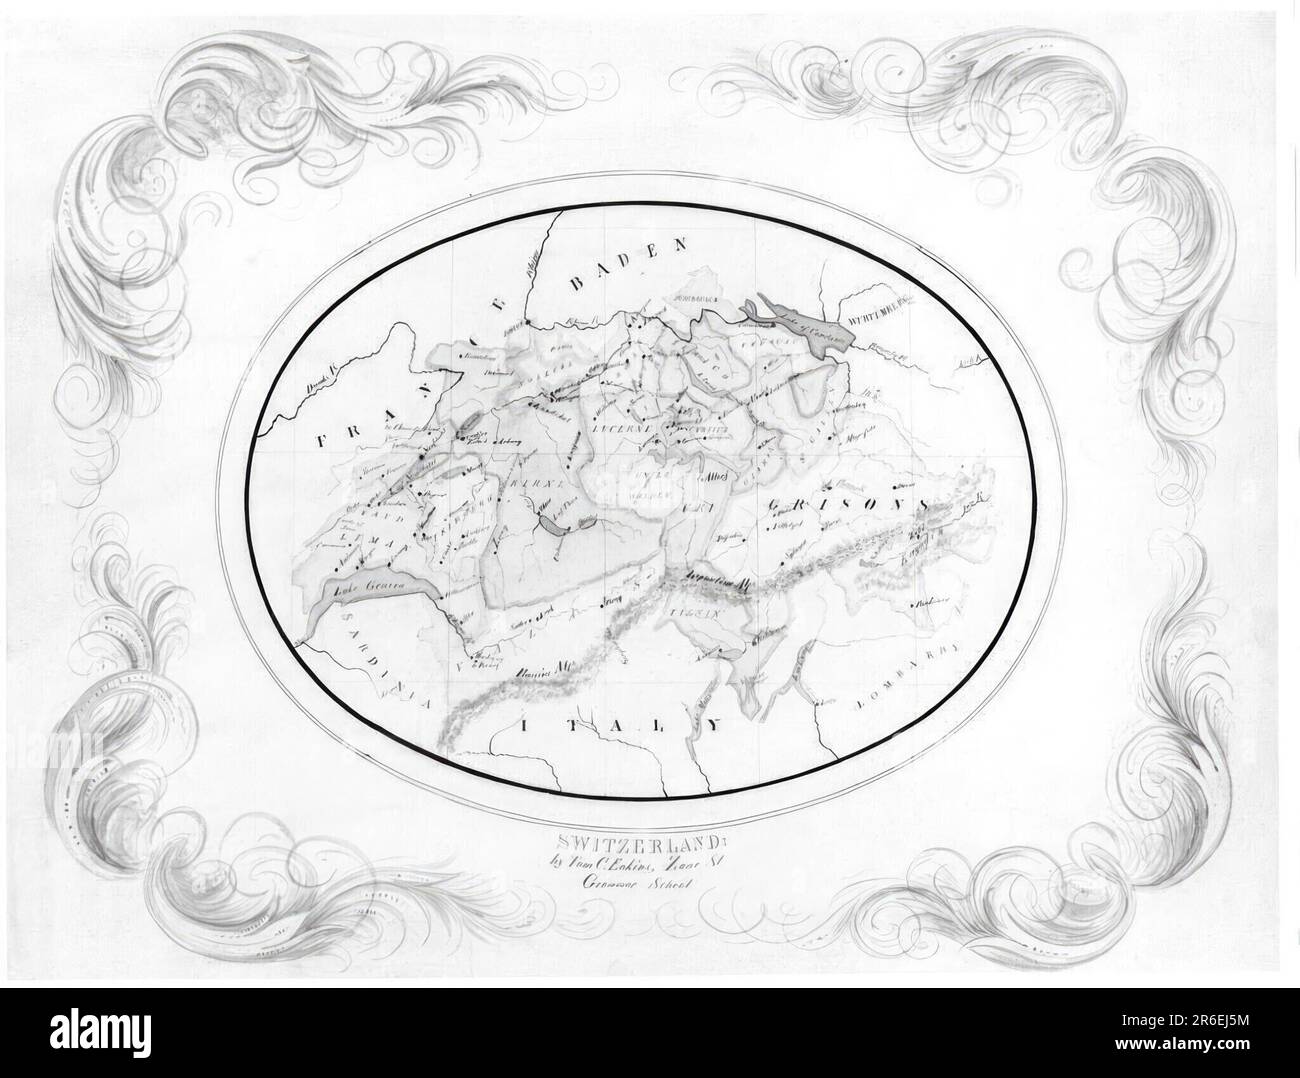 Carte de la Suisse. Encre, aquarelle et crayon sur carton. Date : (c. 1856). MUSÉE : MUSÉE HIRSHHORN ET JARDIN DE SCULPTURES. Banque D'Images